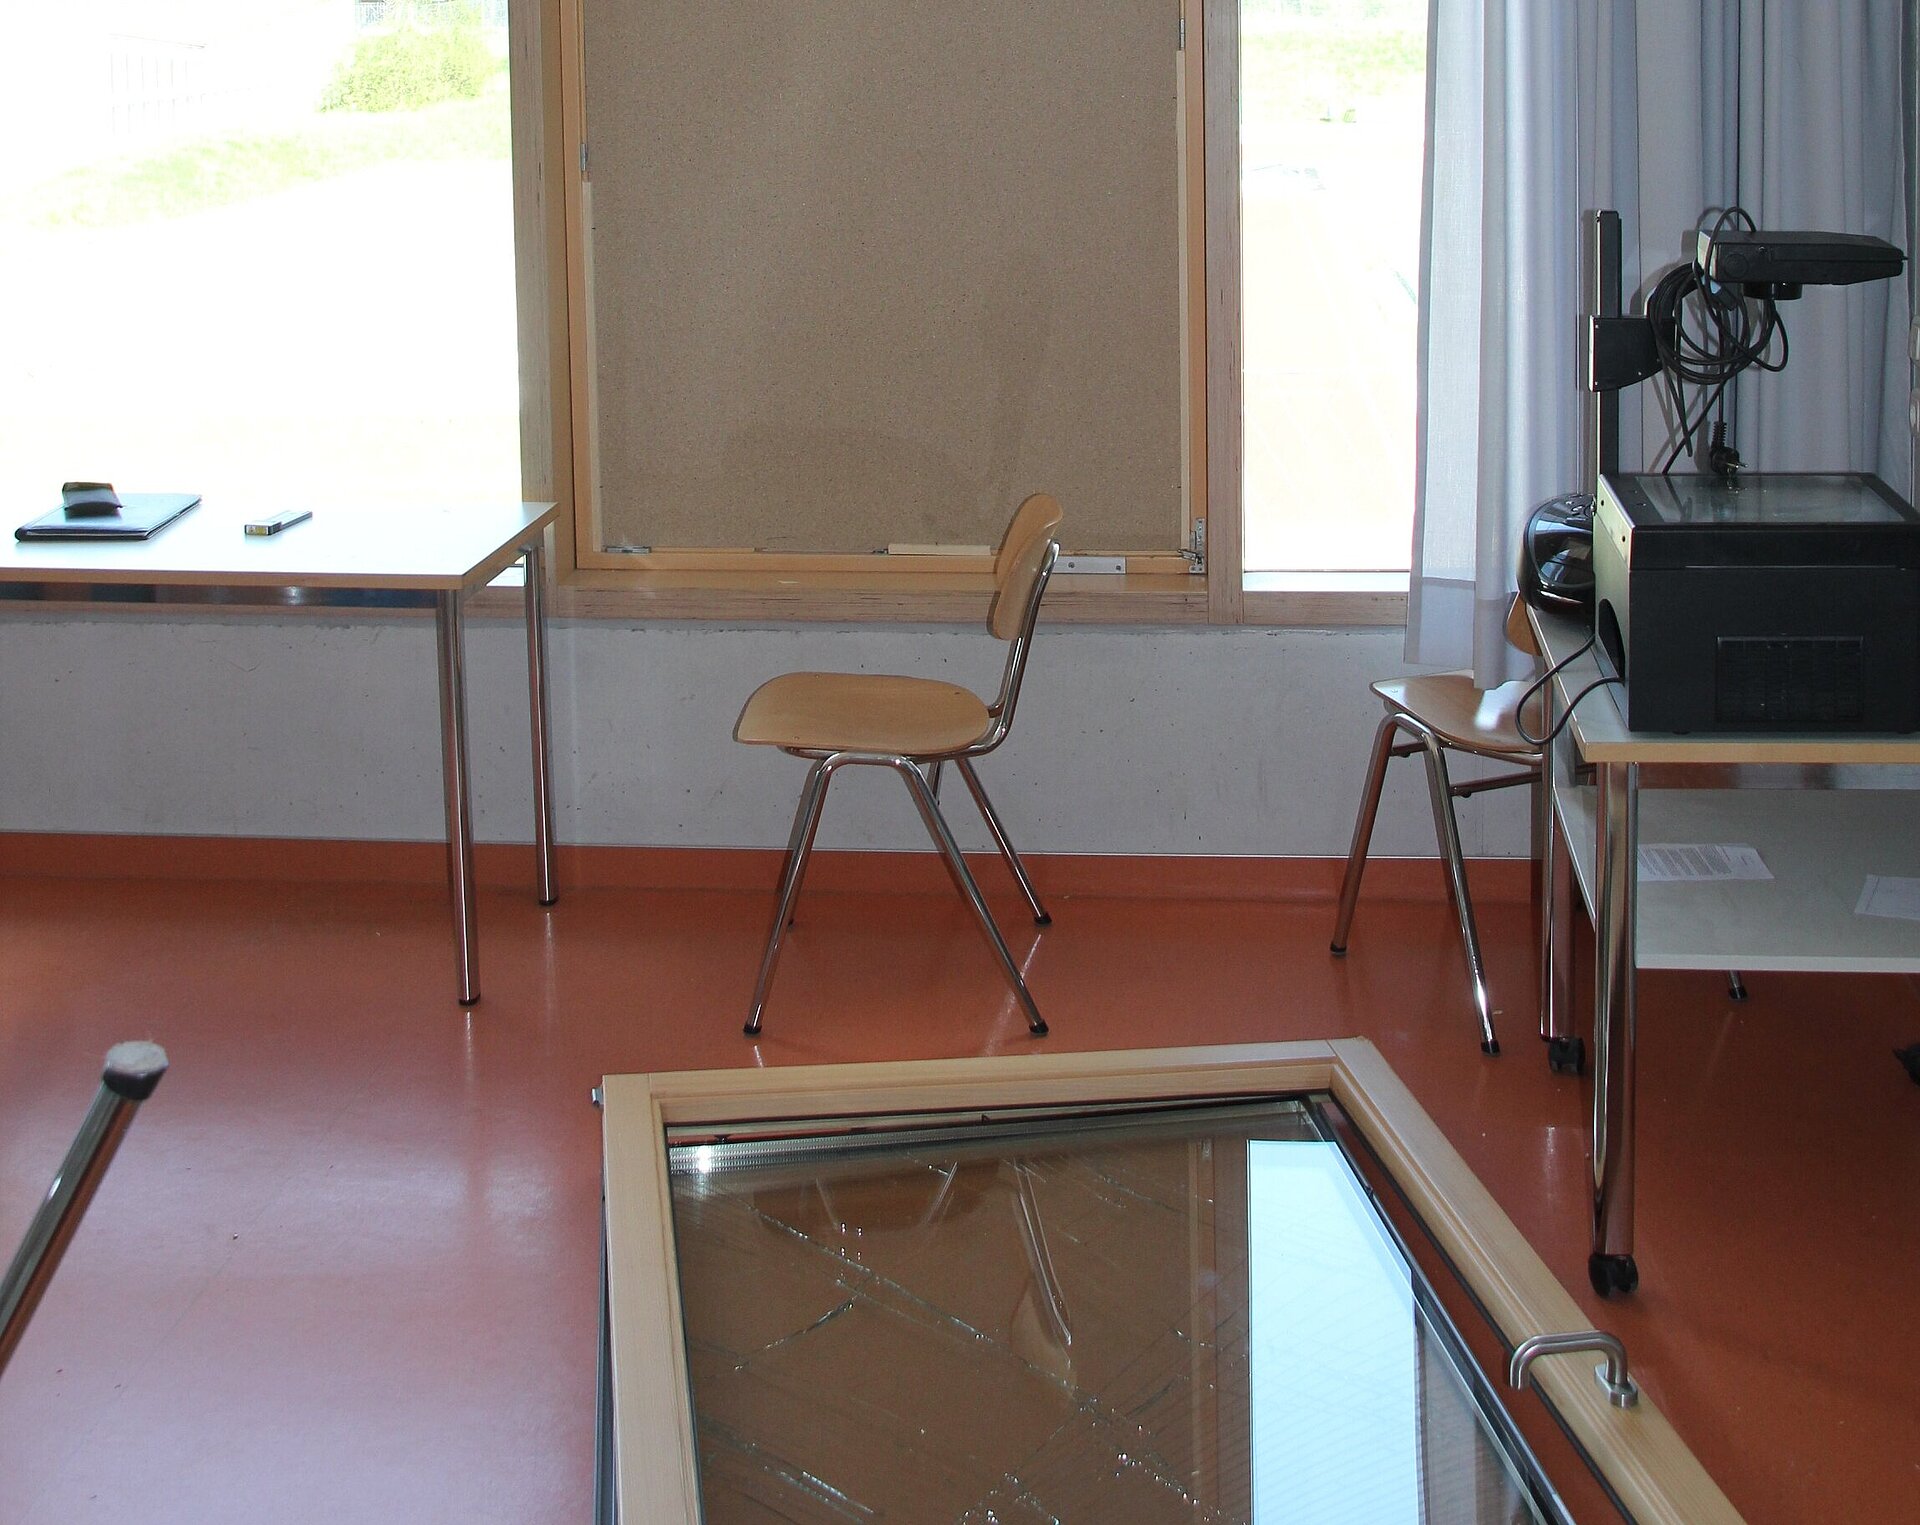 Das Foto zeigt ein kaputtes Fenster an einer Schule, das provisorisch zugemacht wurde, da der Flügel herausgefallen ist